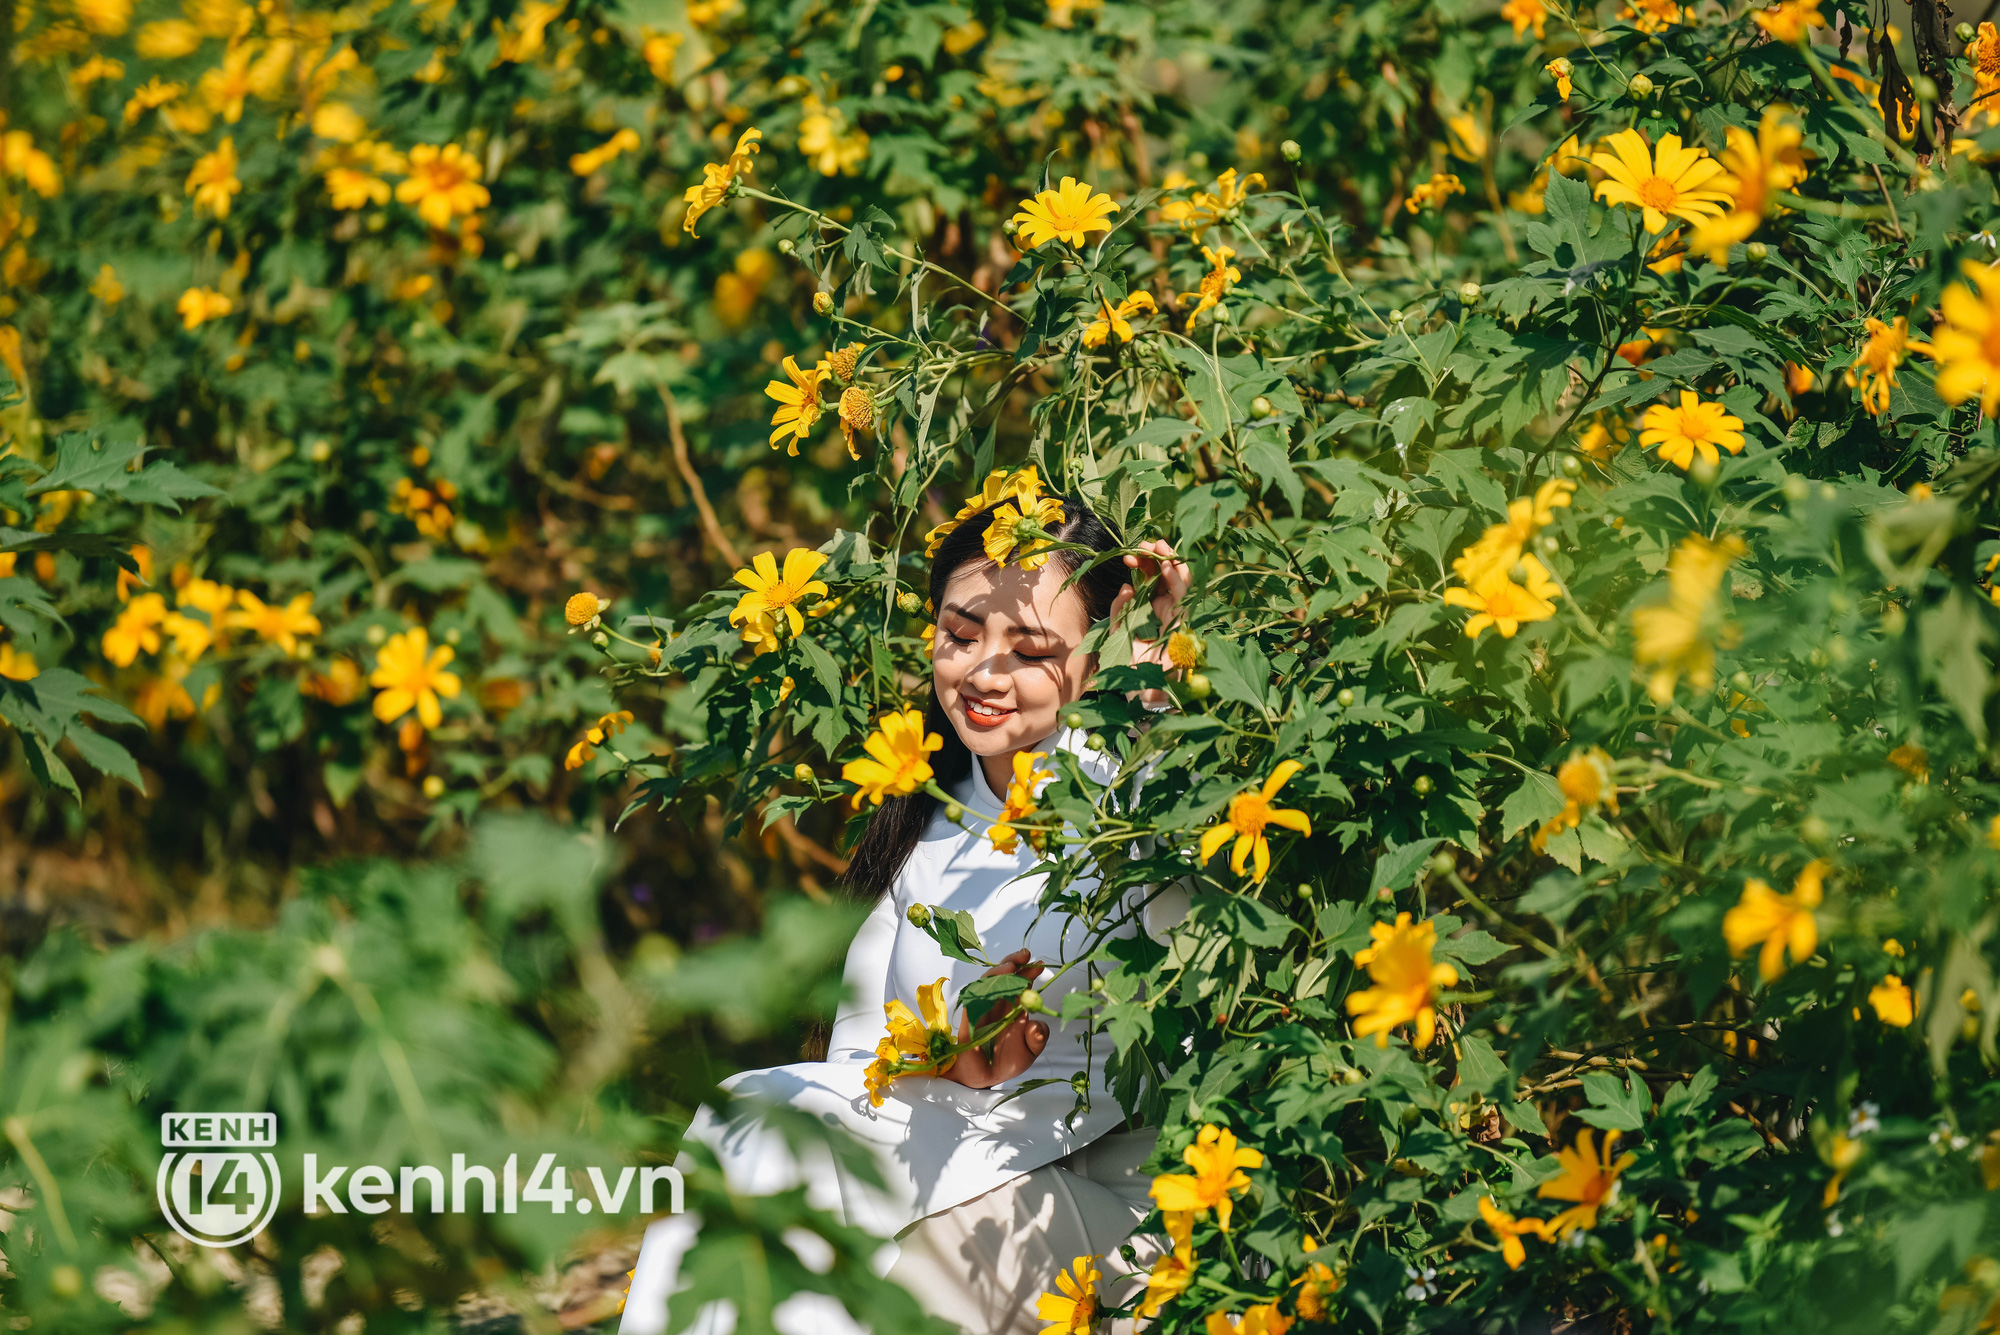 Ảnh: Điểm danh những vườn hoa hot nhất Hà Nội đang được giới trẻ rần rần kéo đến check in - Ảnh 4.